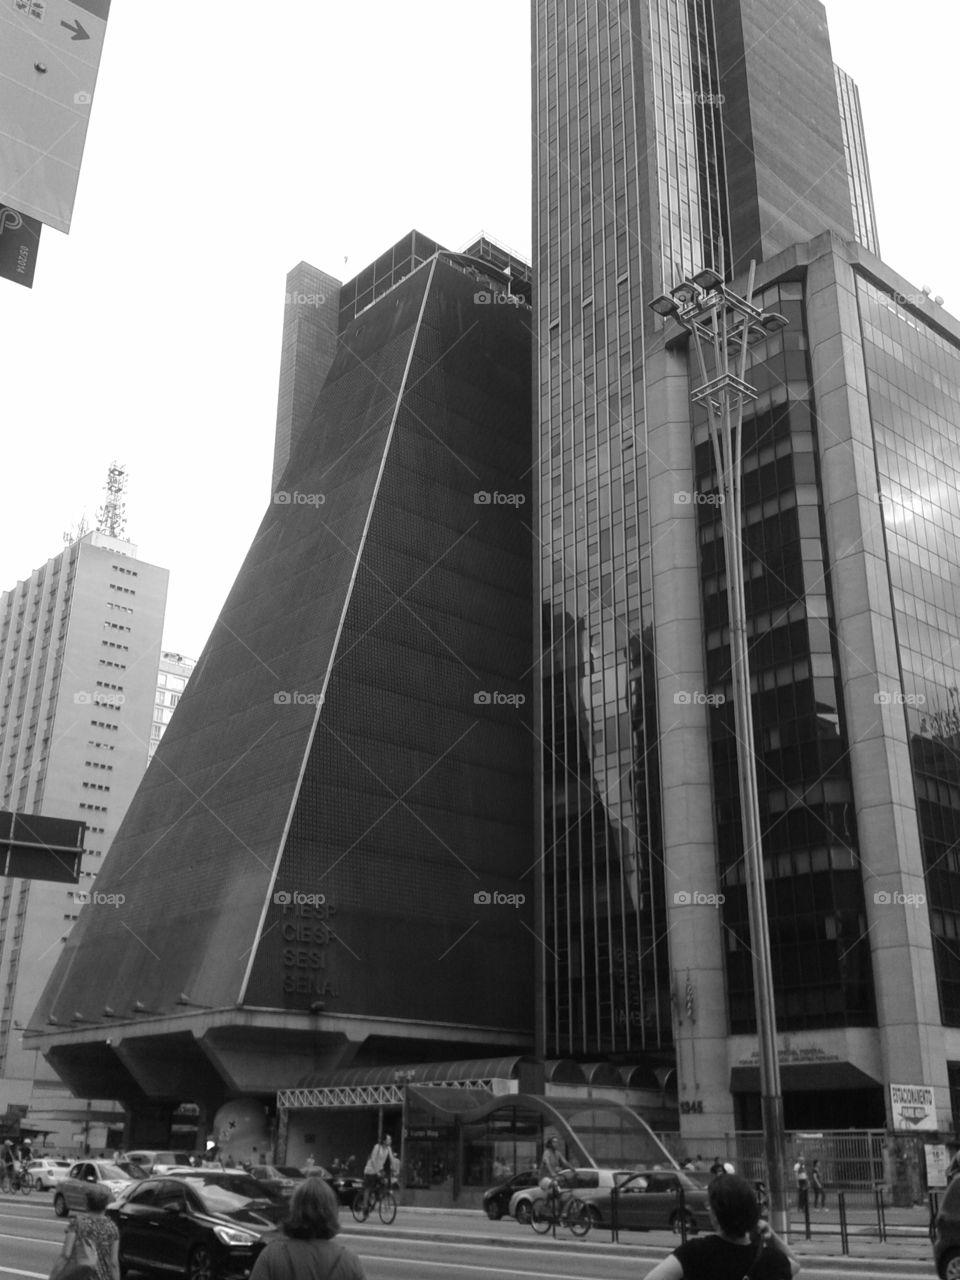 Designed. Fiesp building
Paulista Ave.